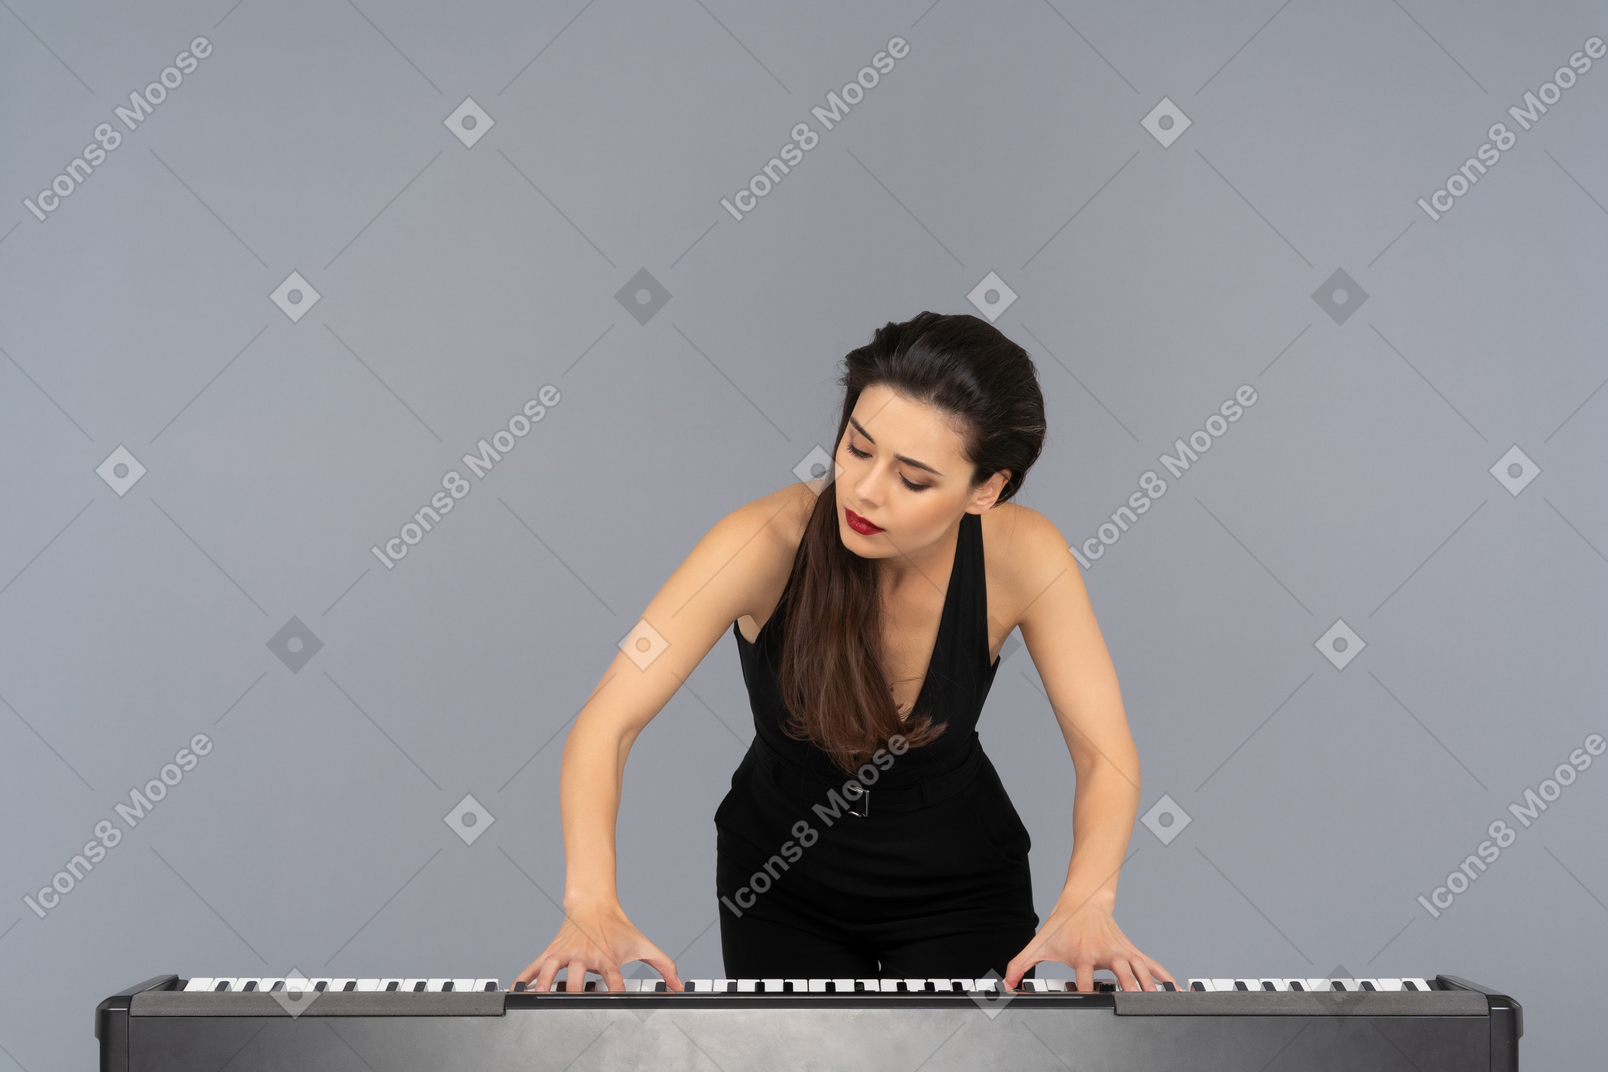 열정적으로 피아노를 연주하는 젊은 여자